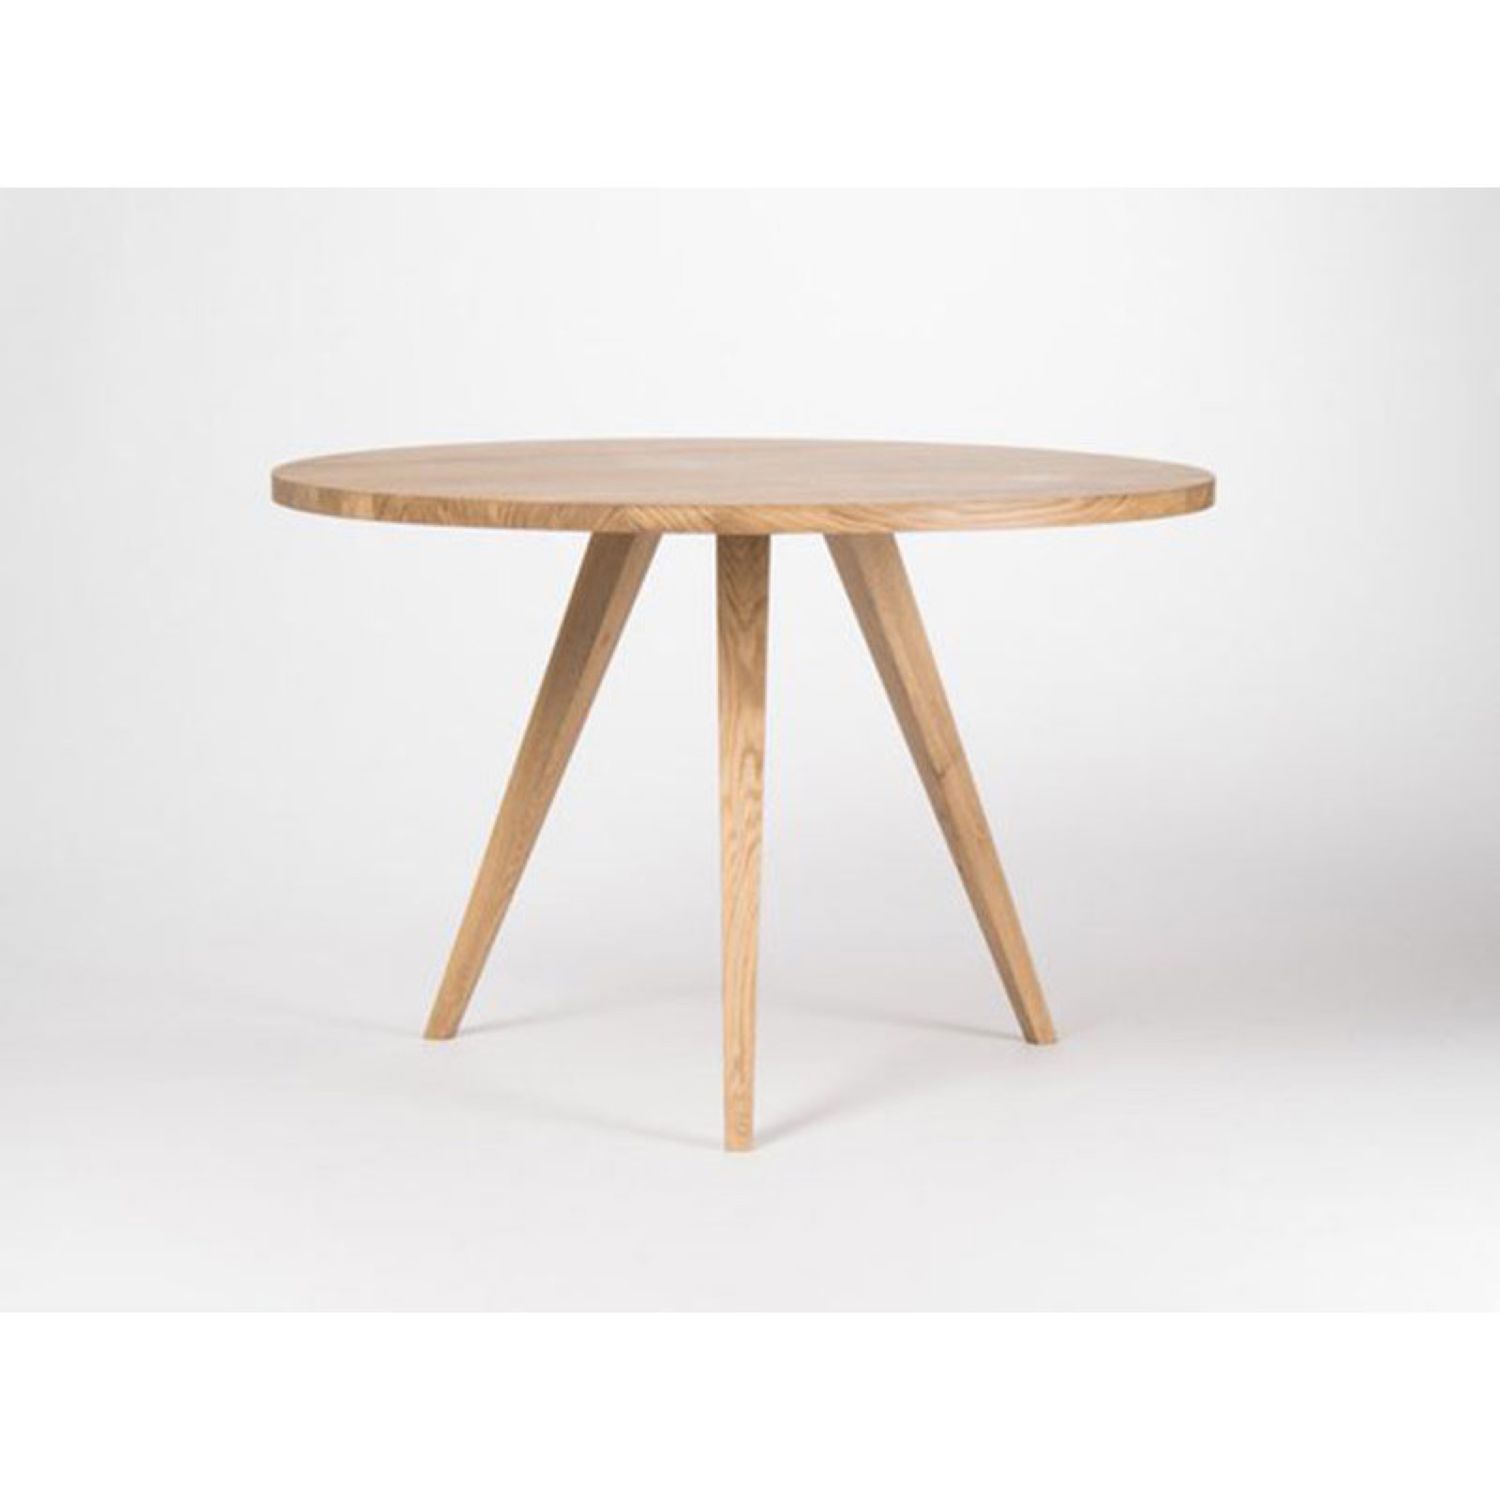 деревянные круглые столы на 4 ногах